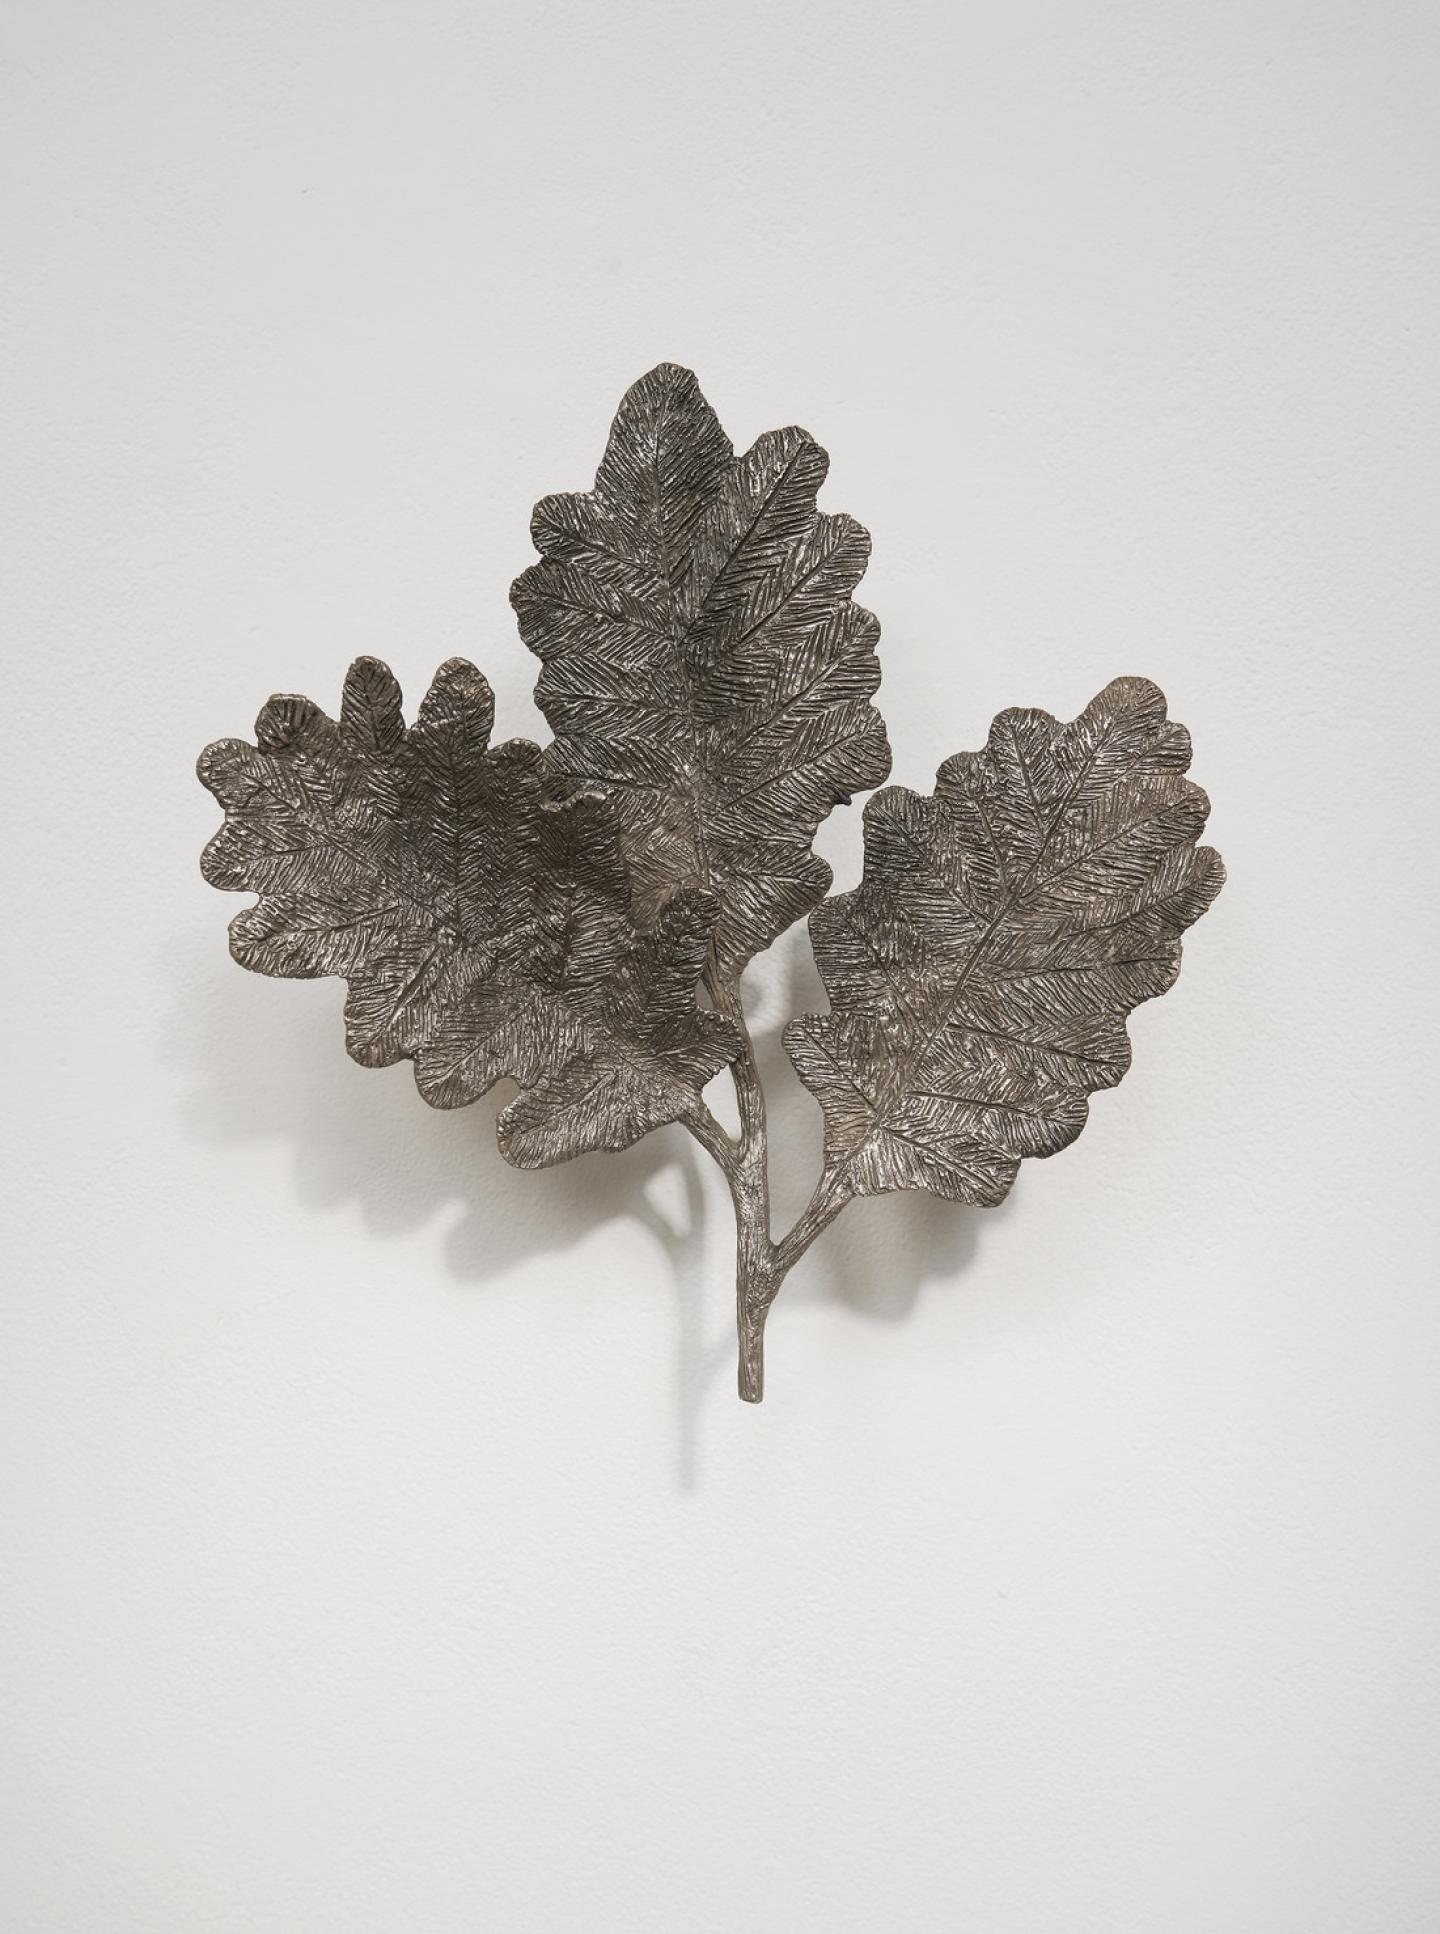 Kiki Smith, Oak Leaves IV, 2018, bronze, 11-1/4" × 10-1/2" × 2" (28.6 cm × 26.7 cm × 5.1 cm) © Kiki Smith